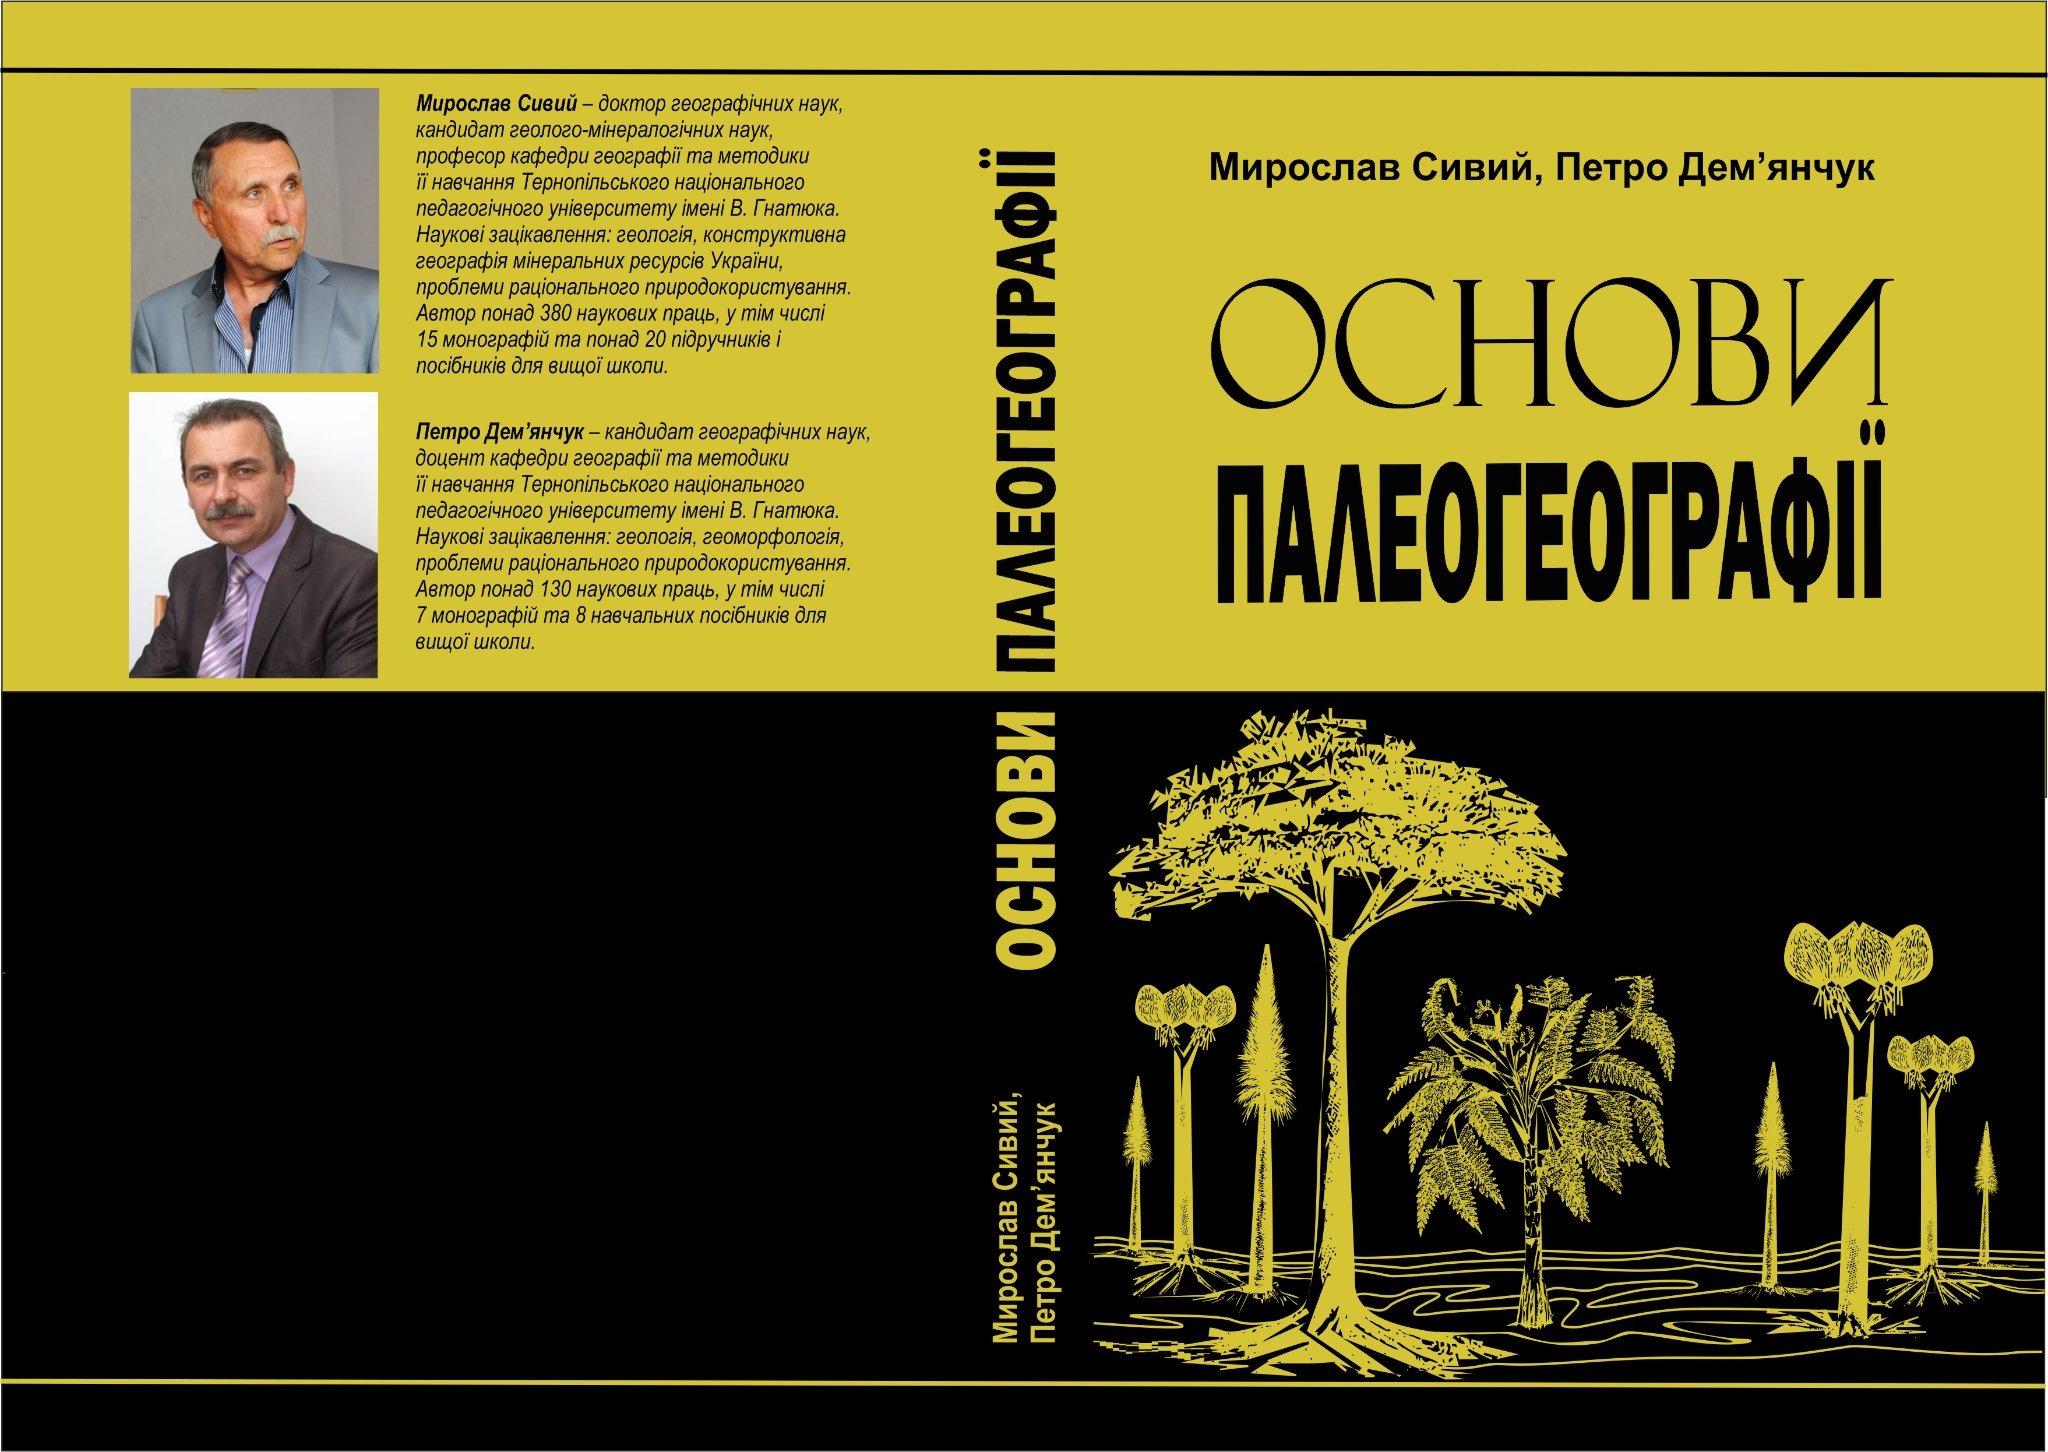 Вийшов з друку перший україномовний підручник "Основи палеогеографії"